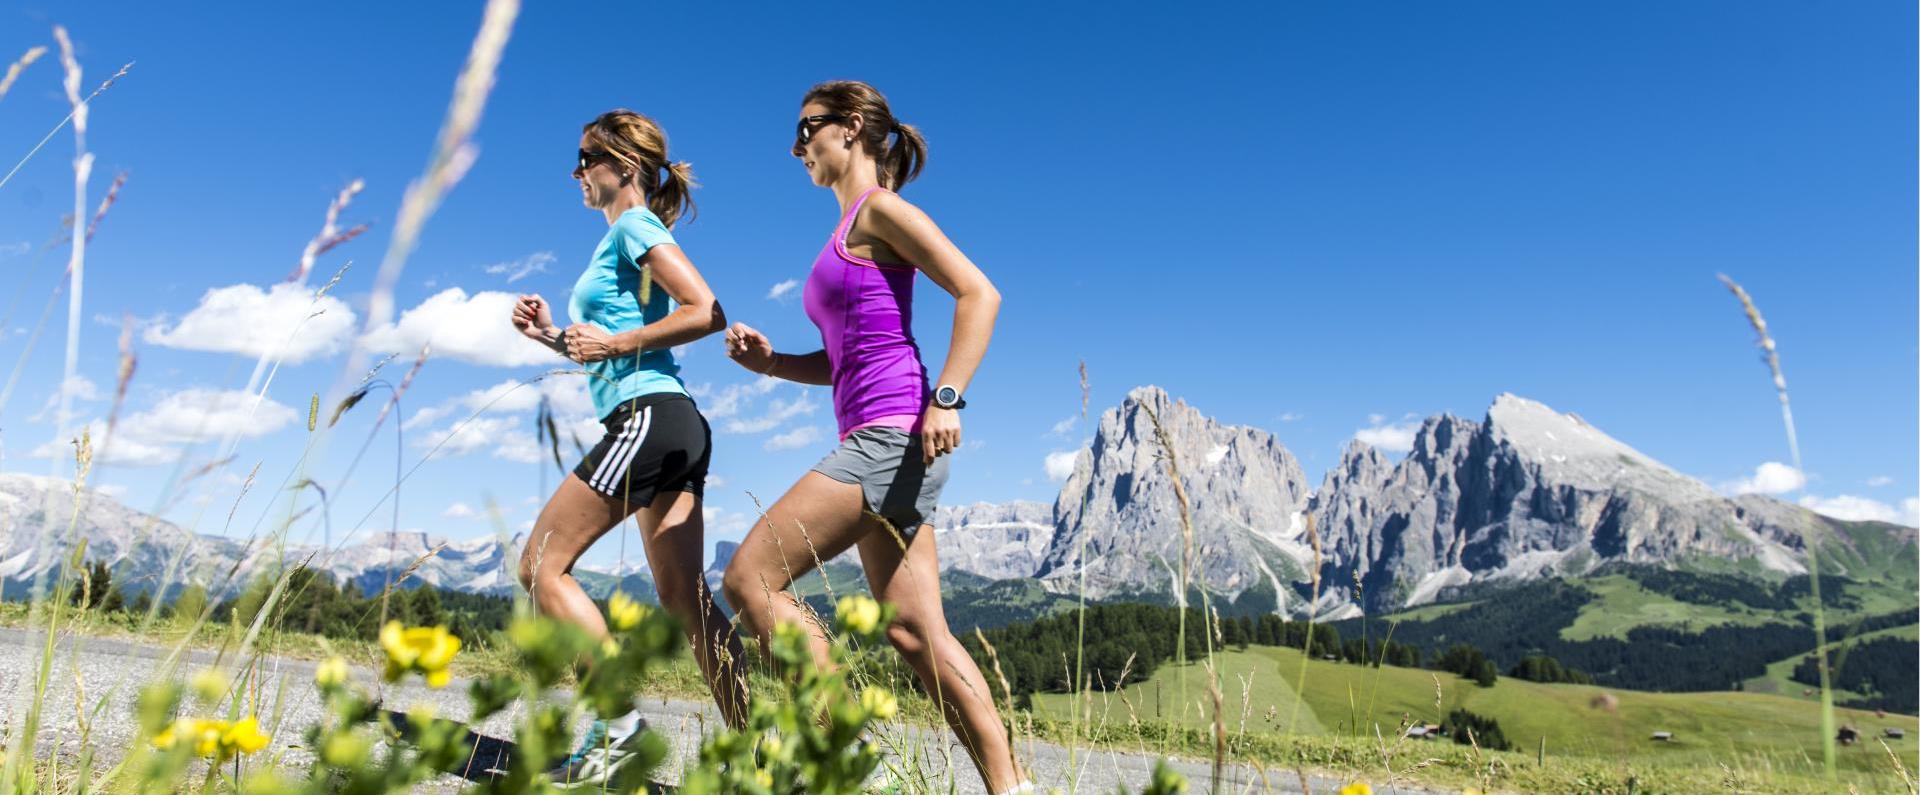 Correre nel Running Park Alpe di Siusi nel cuore delle Dolomiti